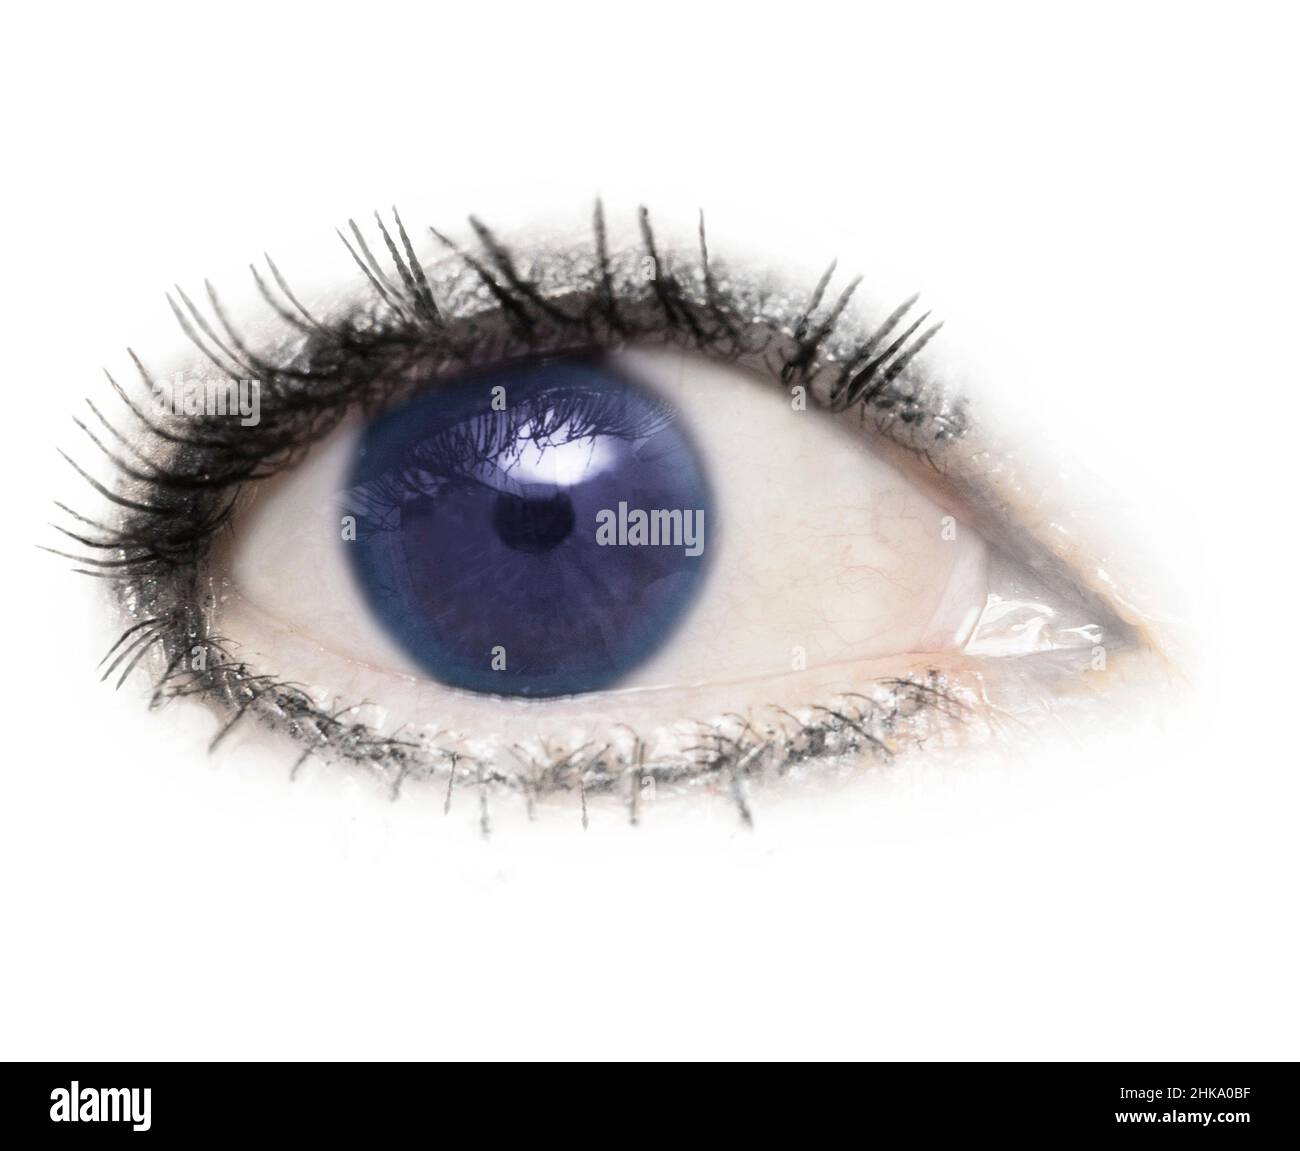 Un œil, un globe oculaire, des yeux bleus, bleus, isolés avec des cils sur un fond blanc.Paupière,pupille,sclère,iris. Banque D'Images